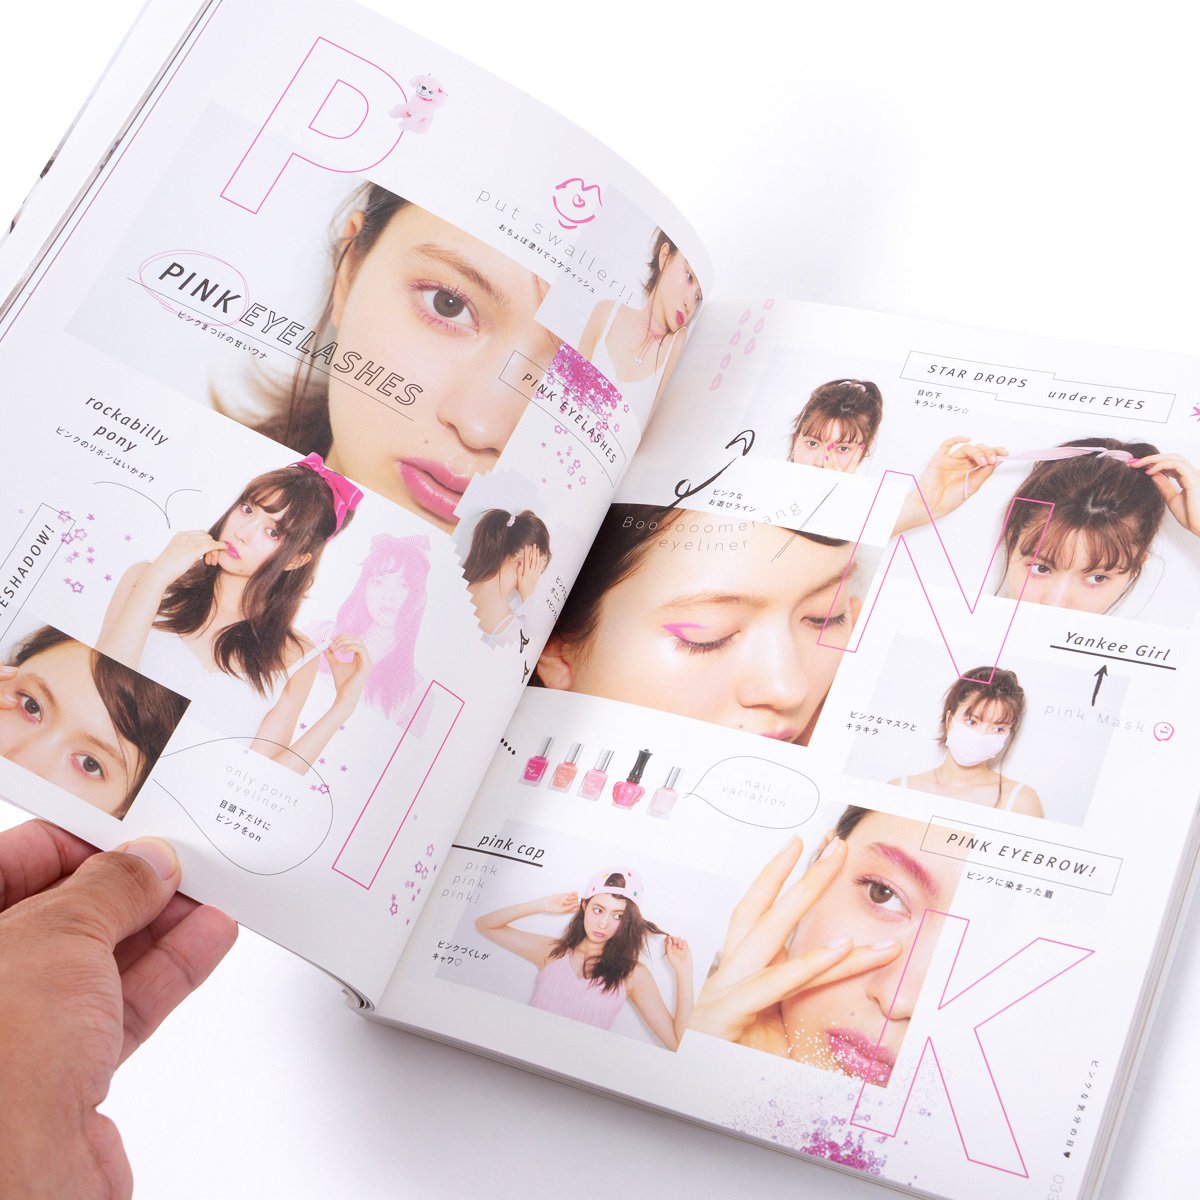 Shinobu Igari 365-Day Makeup Encyclopedia 68% OFF - Tokyo Otaku Mode (TOM)